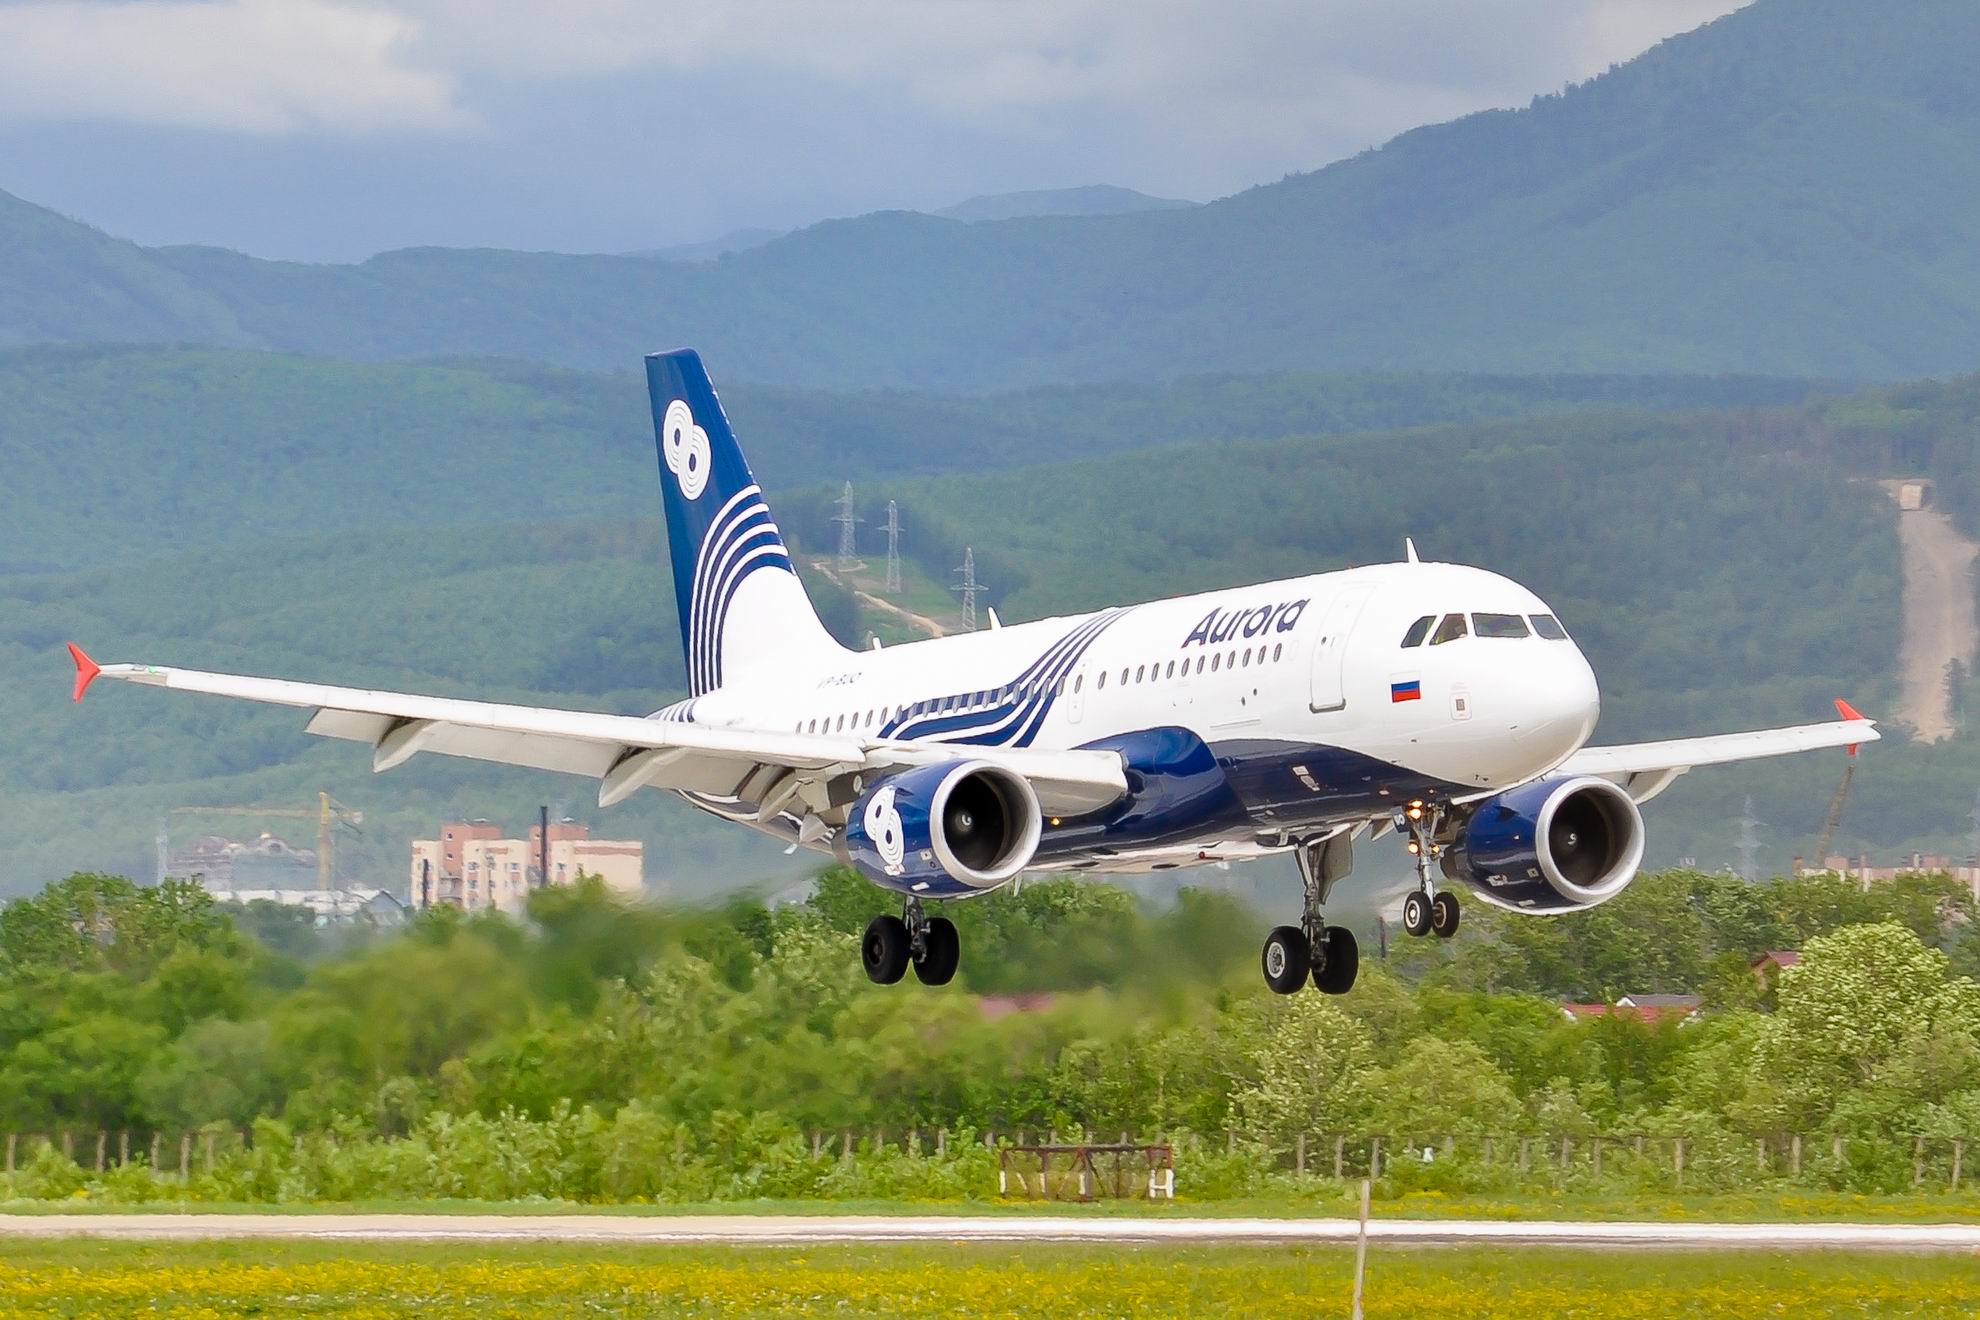 С конца июня авиакомпания «Аврора» возобновляет рейсы из Благовещенска в Комсомольск-на-Амуре / Авиакомпания «Аврора» возобновляет полеты в Комсомольск-на-Амуре. Рейсы на воздушных судах DHC-8 Q400 будут выполняться по вторникам. Полеты начнутся с 28 июня.